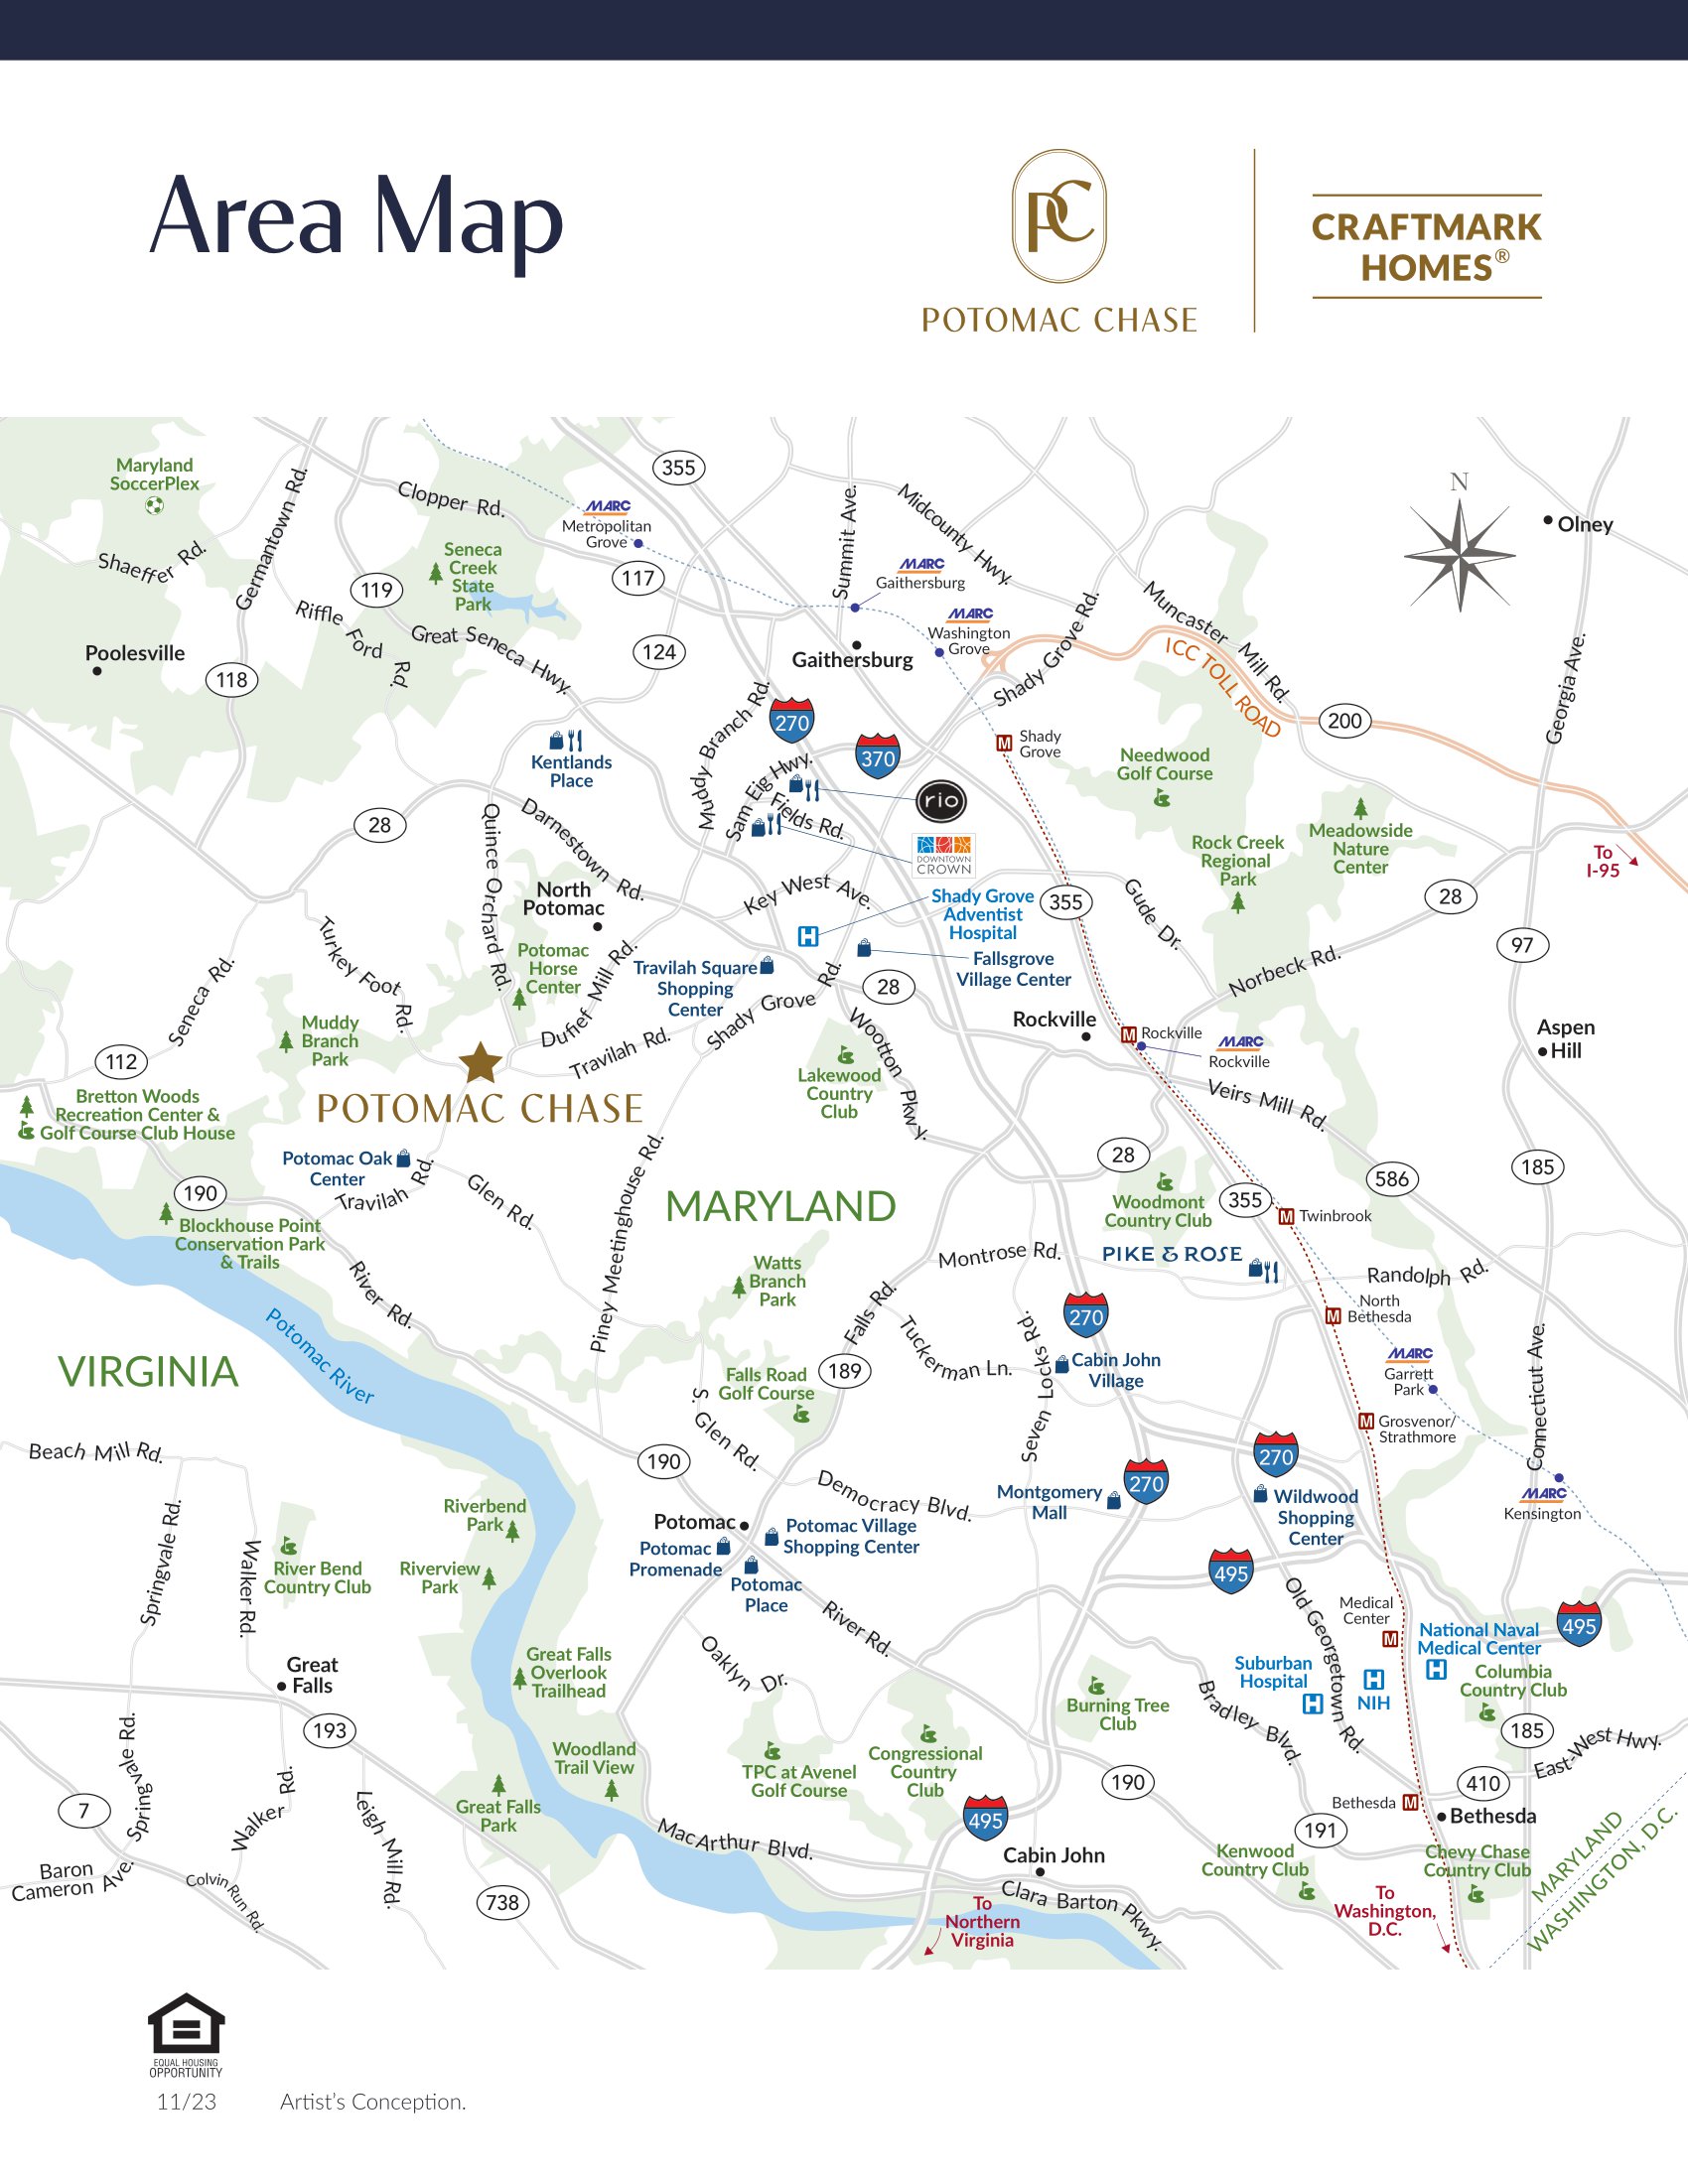 Potomac Chase Site Plan, Craftmark Homes